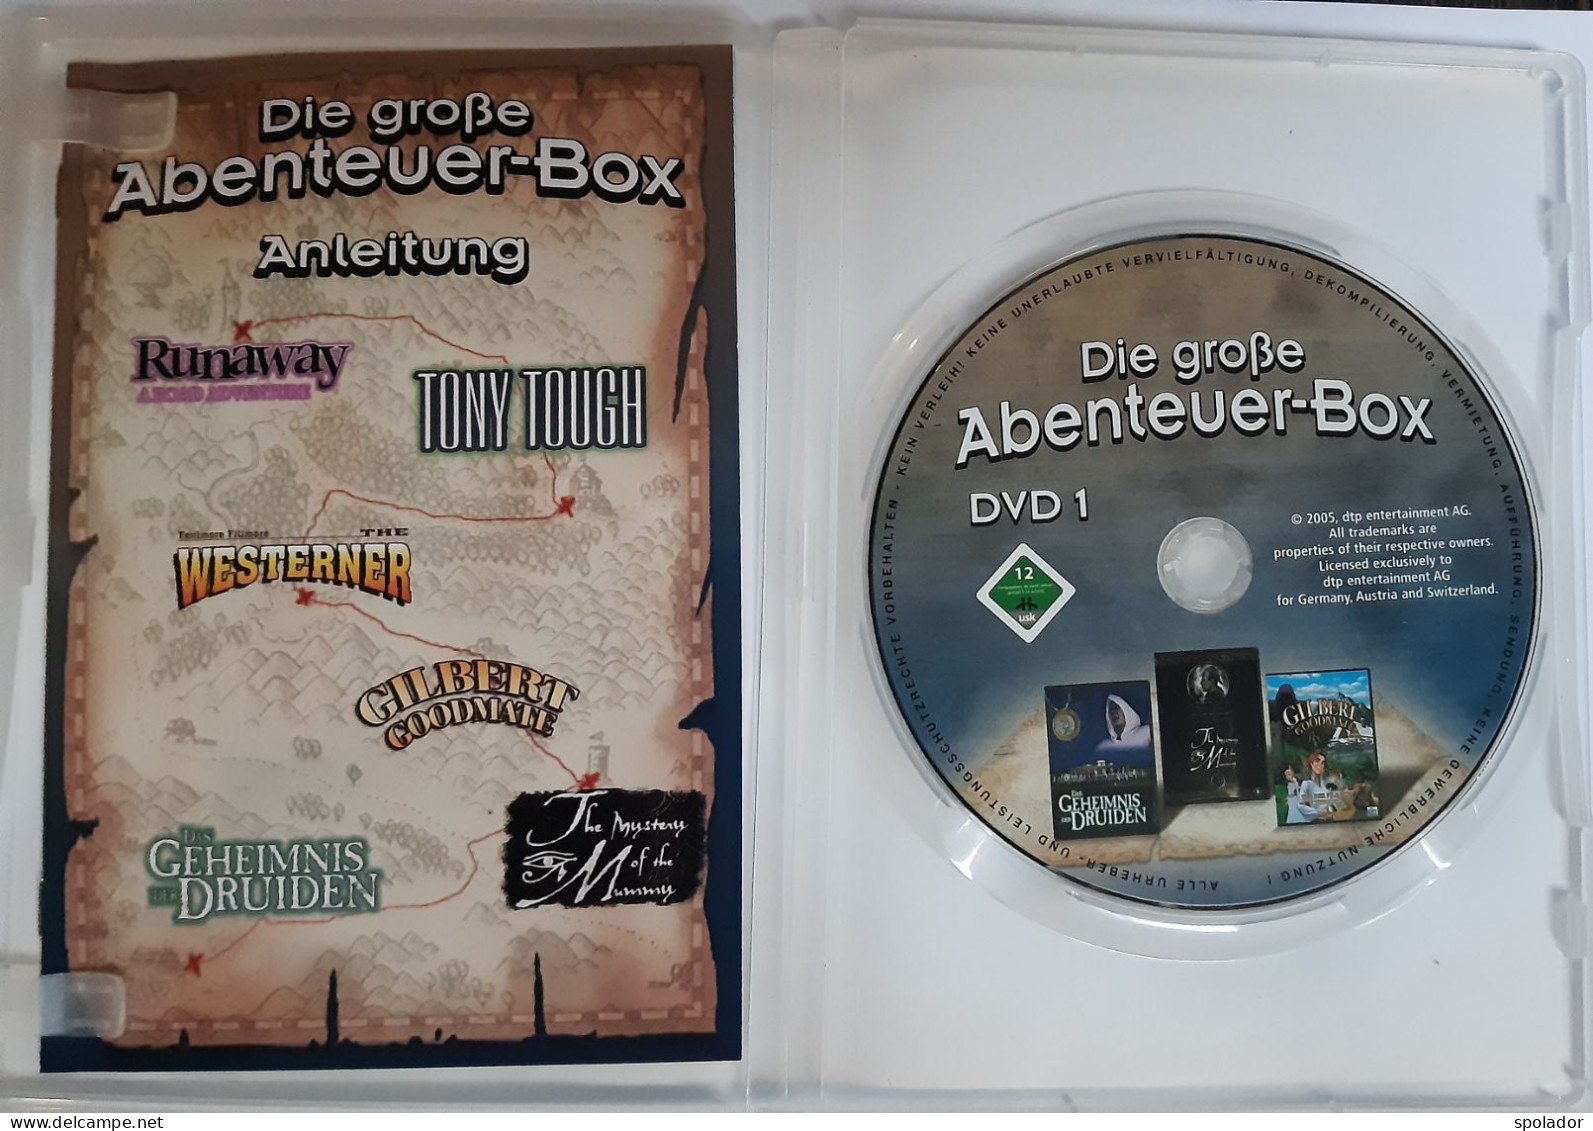 Die Große Abenteuer-Box DVD 1-2005-PC-DVD-ROM - PC-Spiele